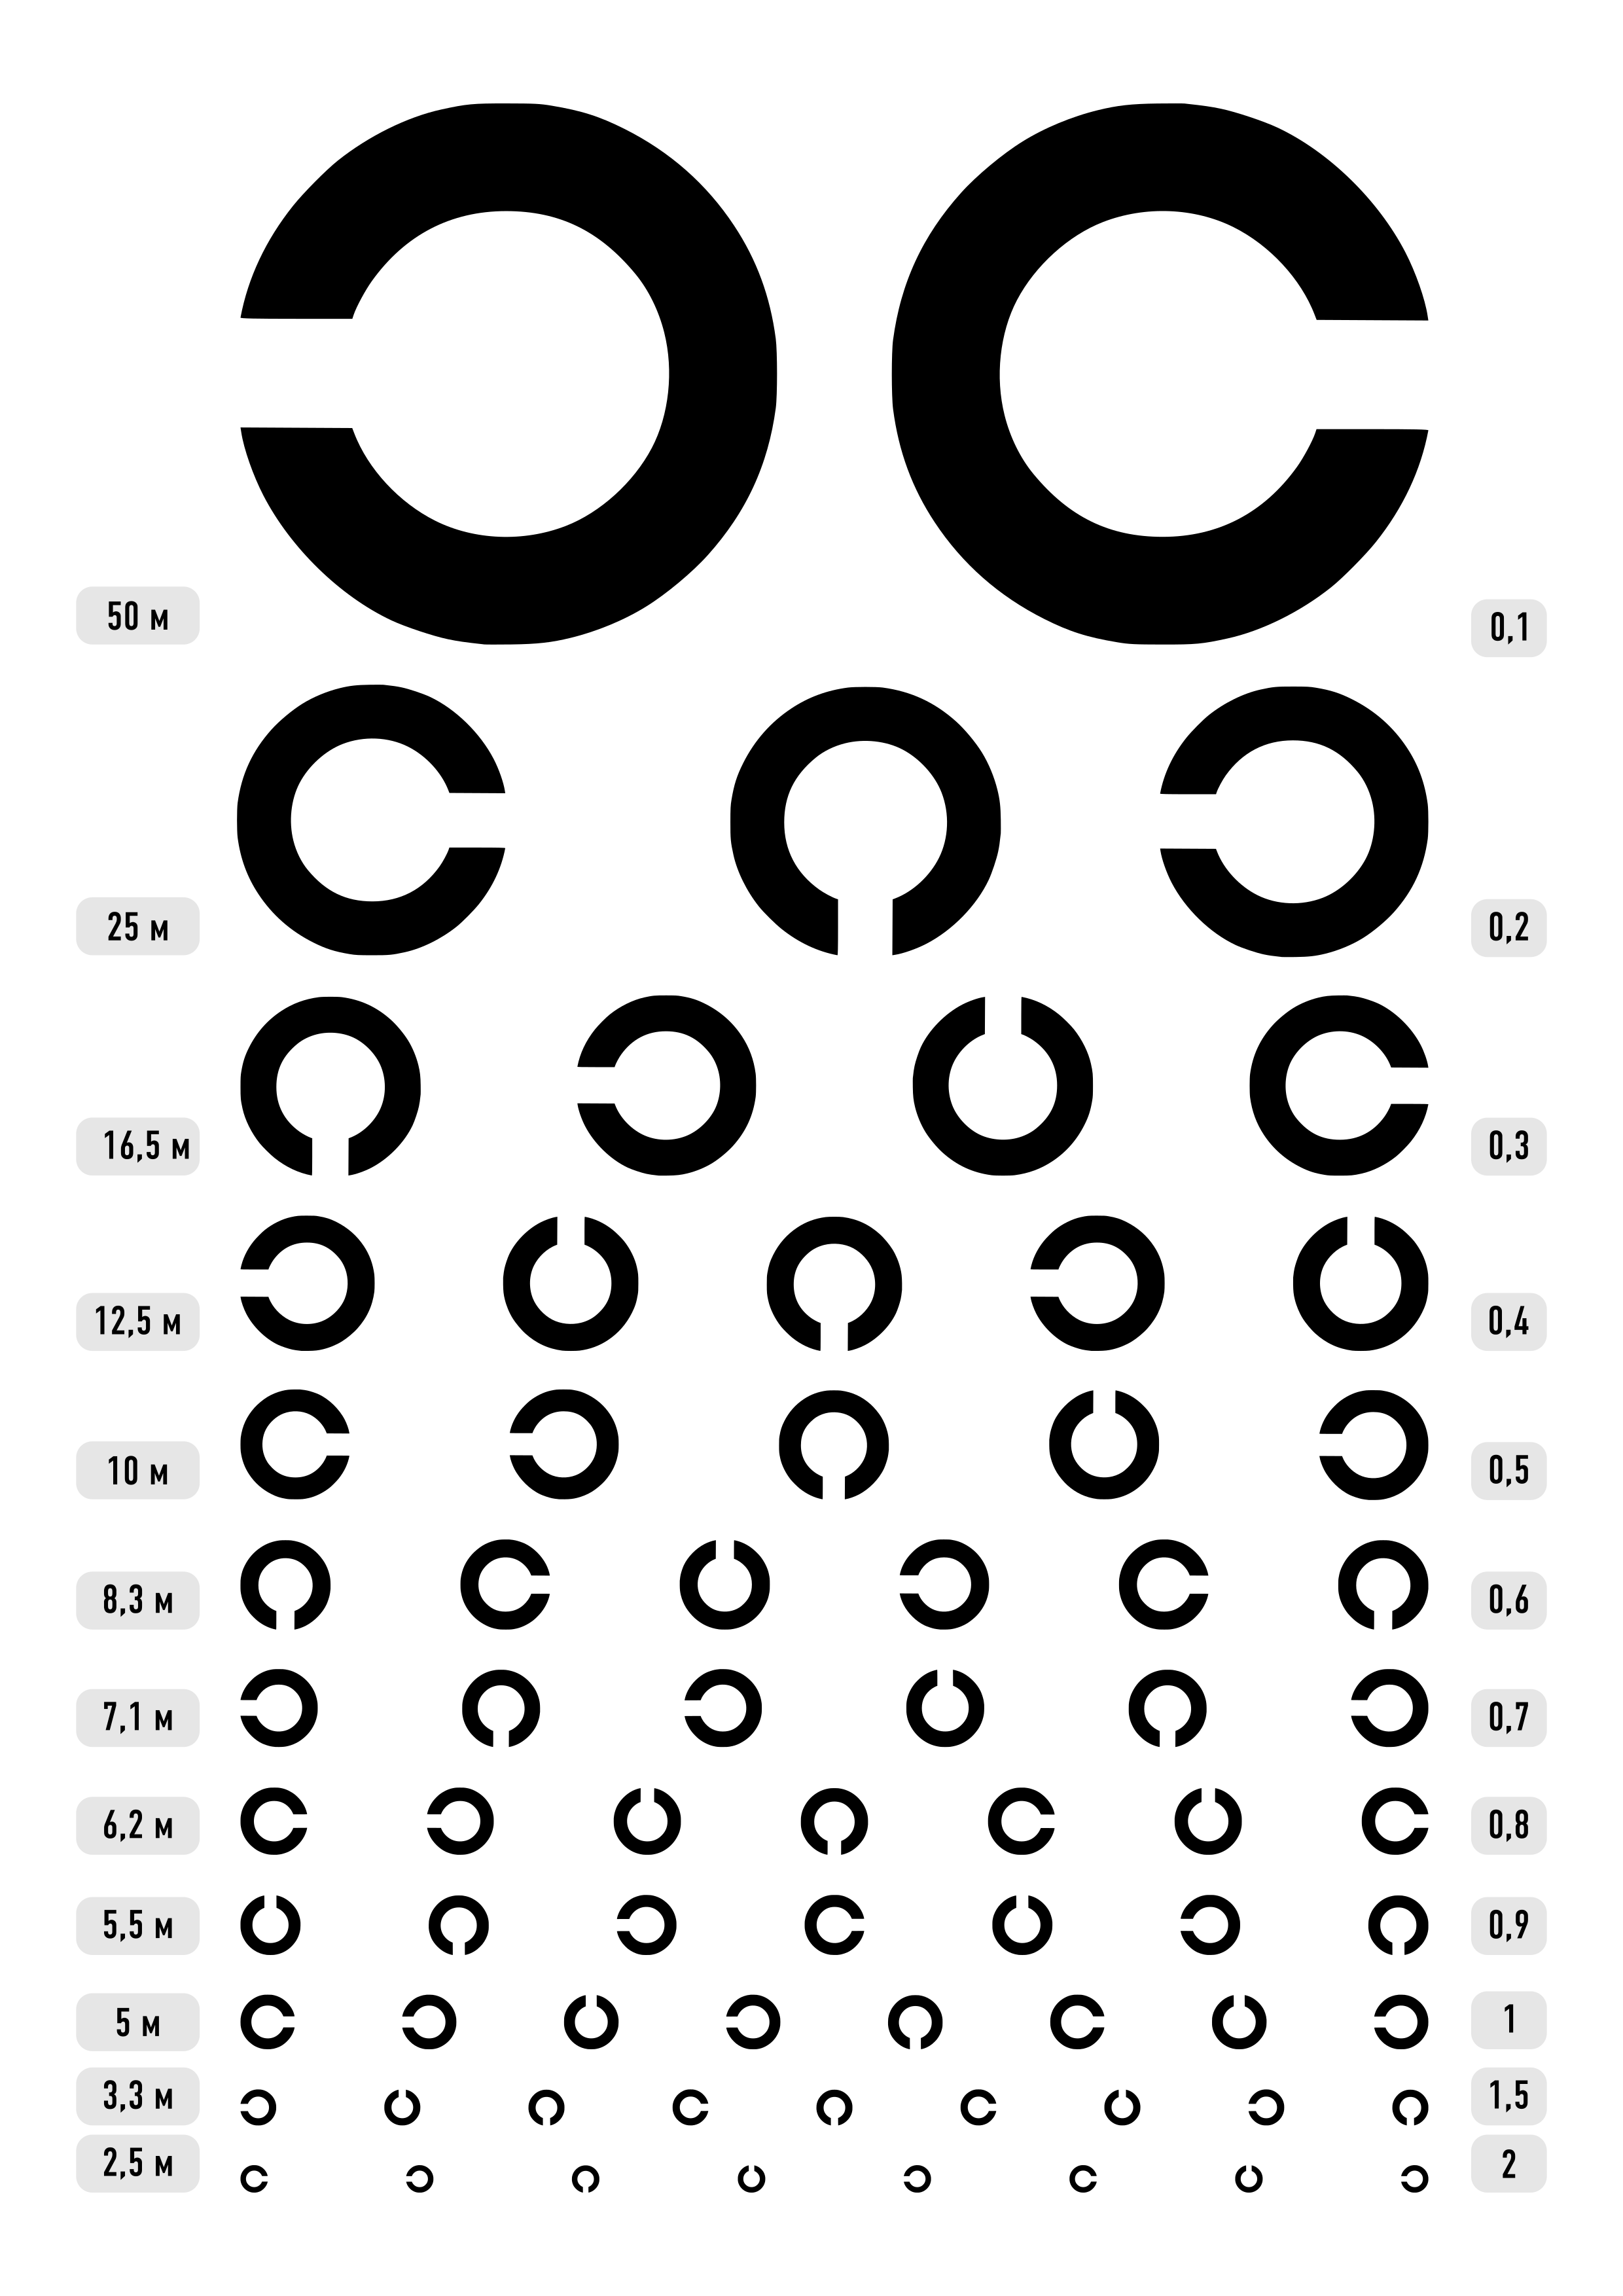 Таблица проверки зрения сивцева - распечатать или скачать, цифры для остроты глаз, шбмнк, орловой, сивкова